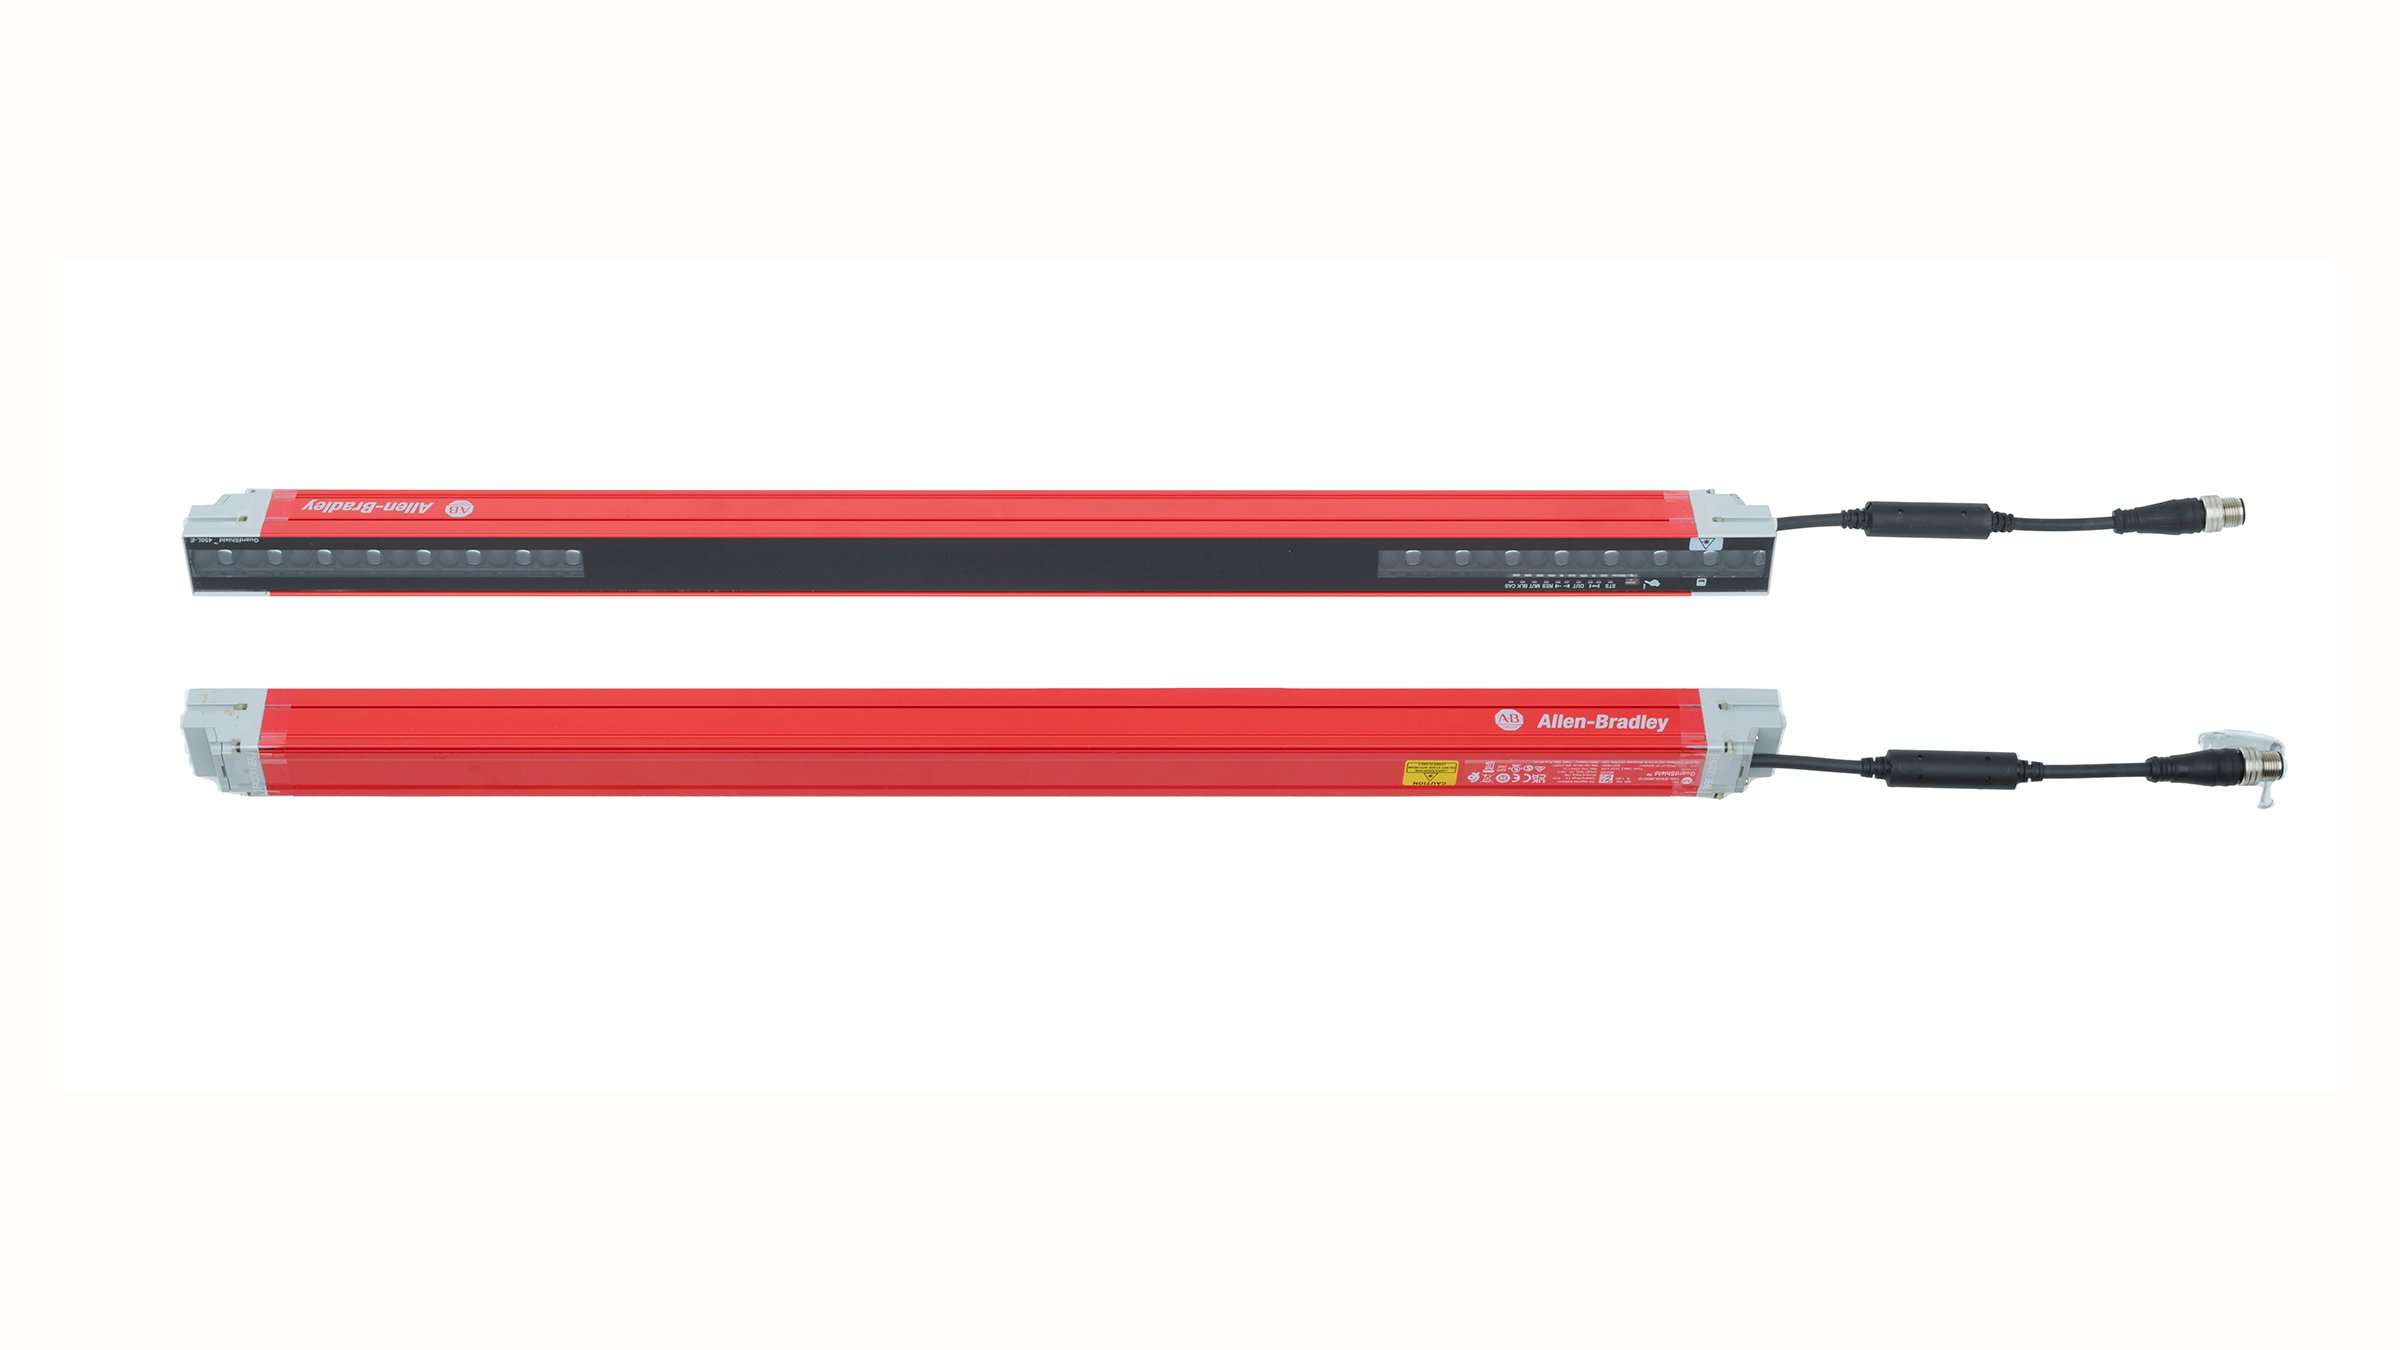 一对水平放置的 600 mm 长红色安全光幕，带有灰色的端盖与彼此相对的镜头，右端有插件和连接器多股线